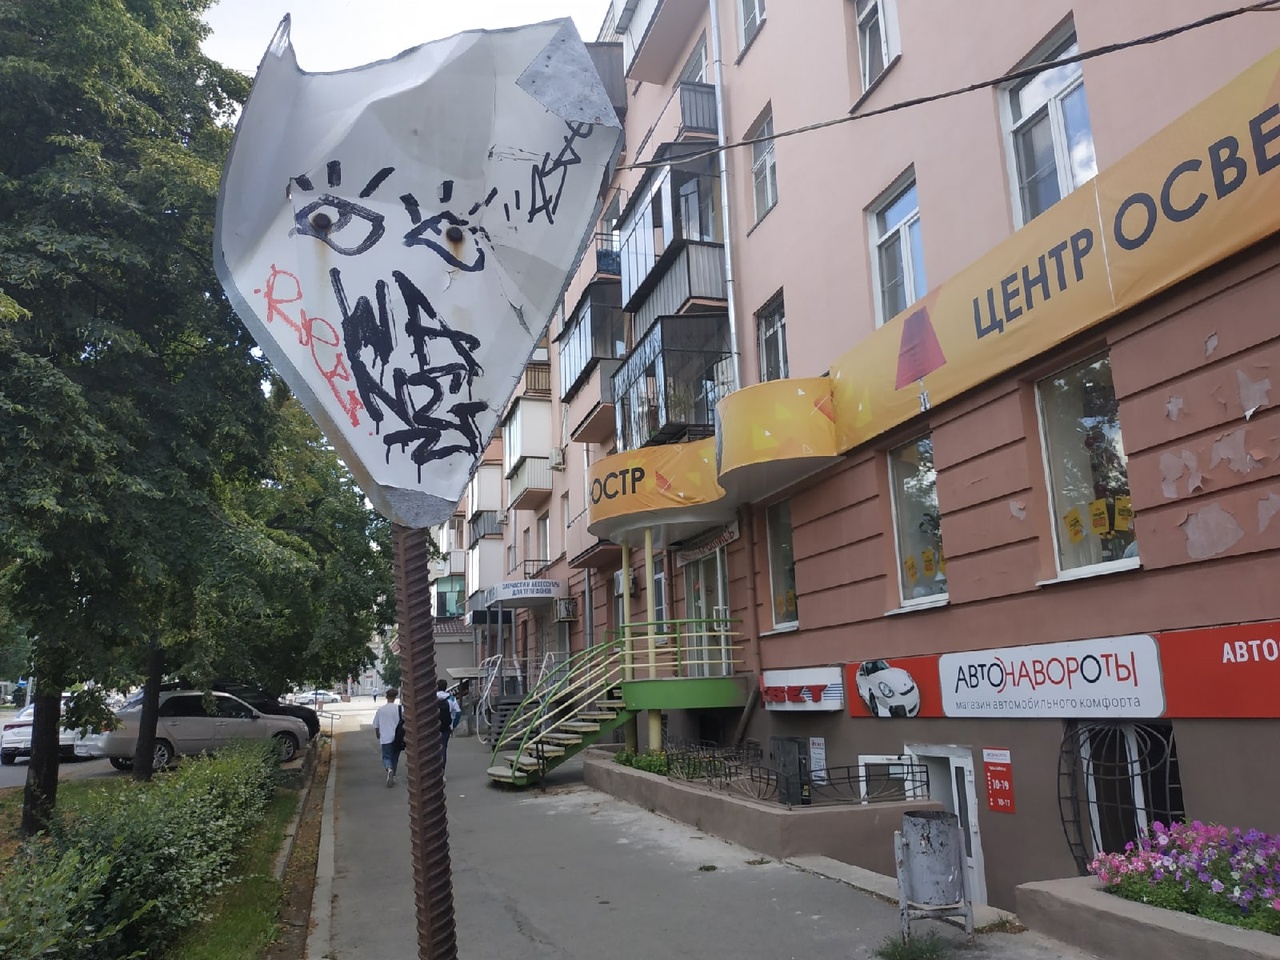 Горе-художники продолжают «надругательства» над зданиями в центре Челябинска